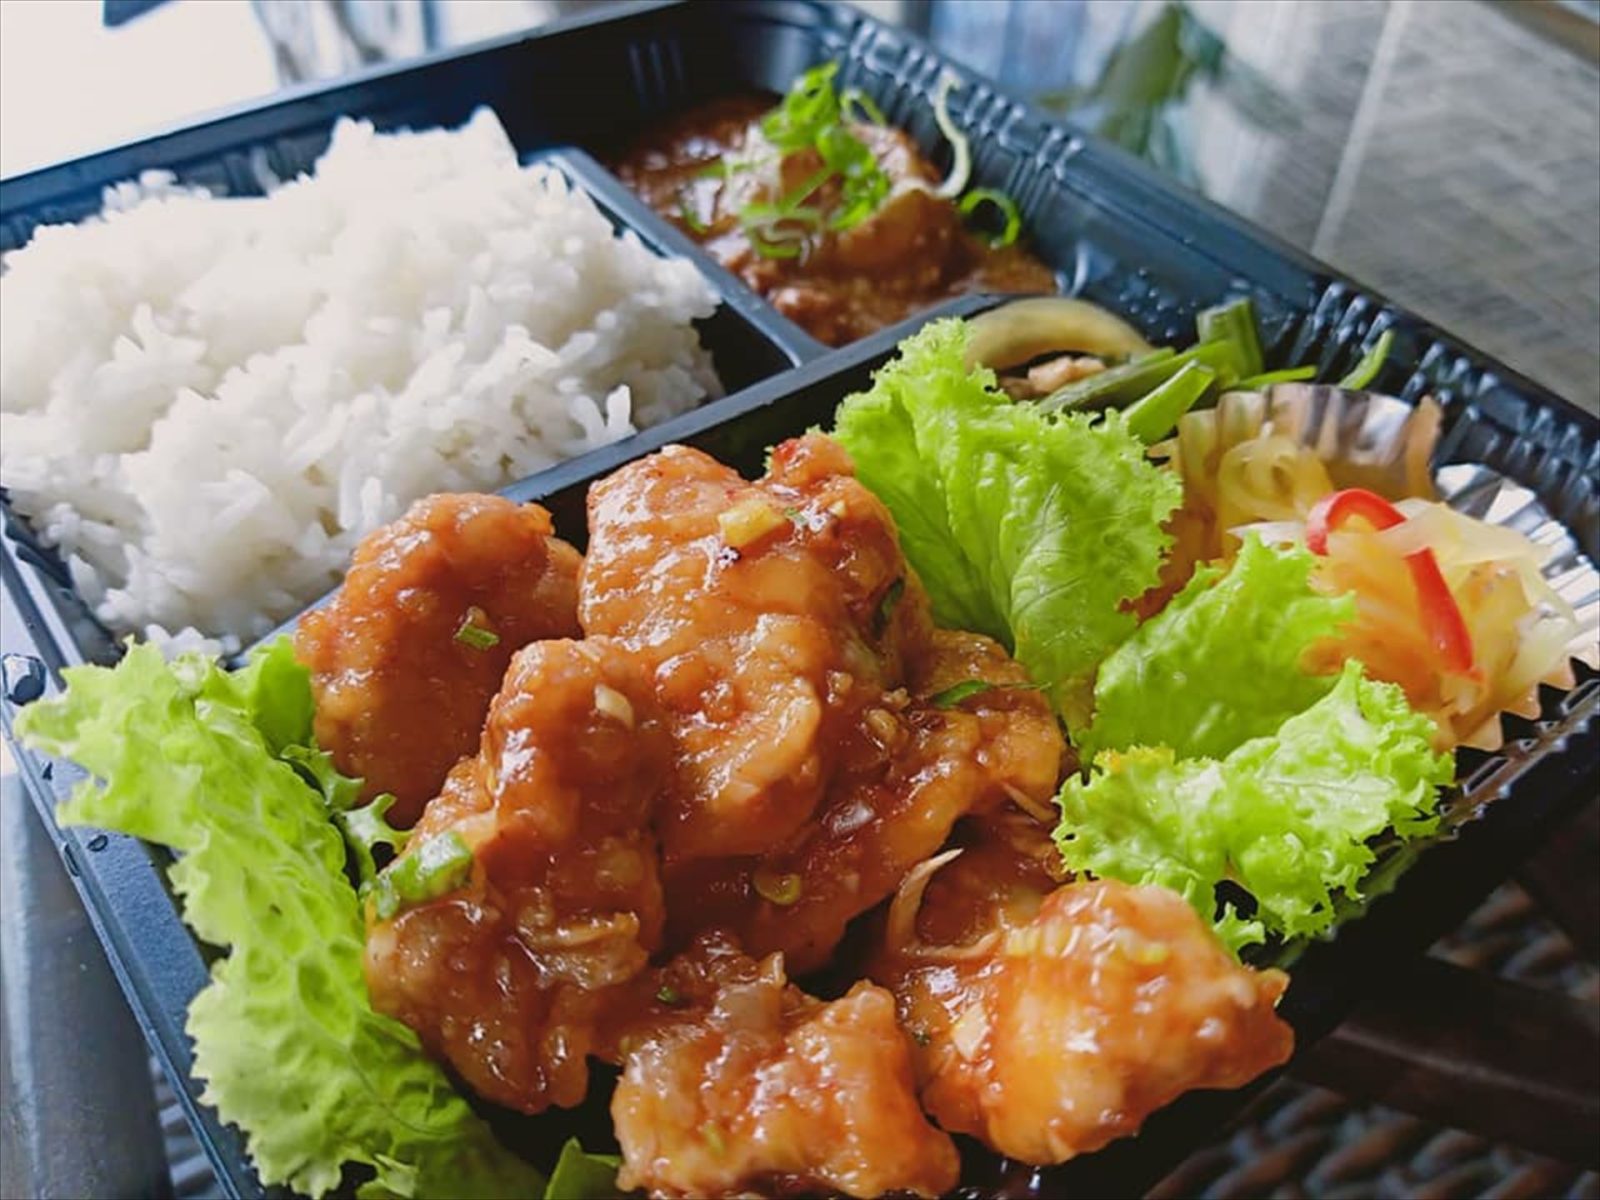 昼食は弁当。日本のものとほぼ同じなので食べやすいです